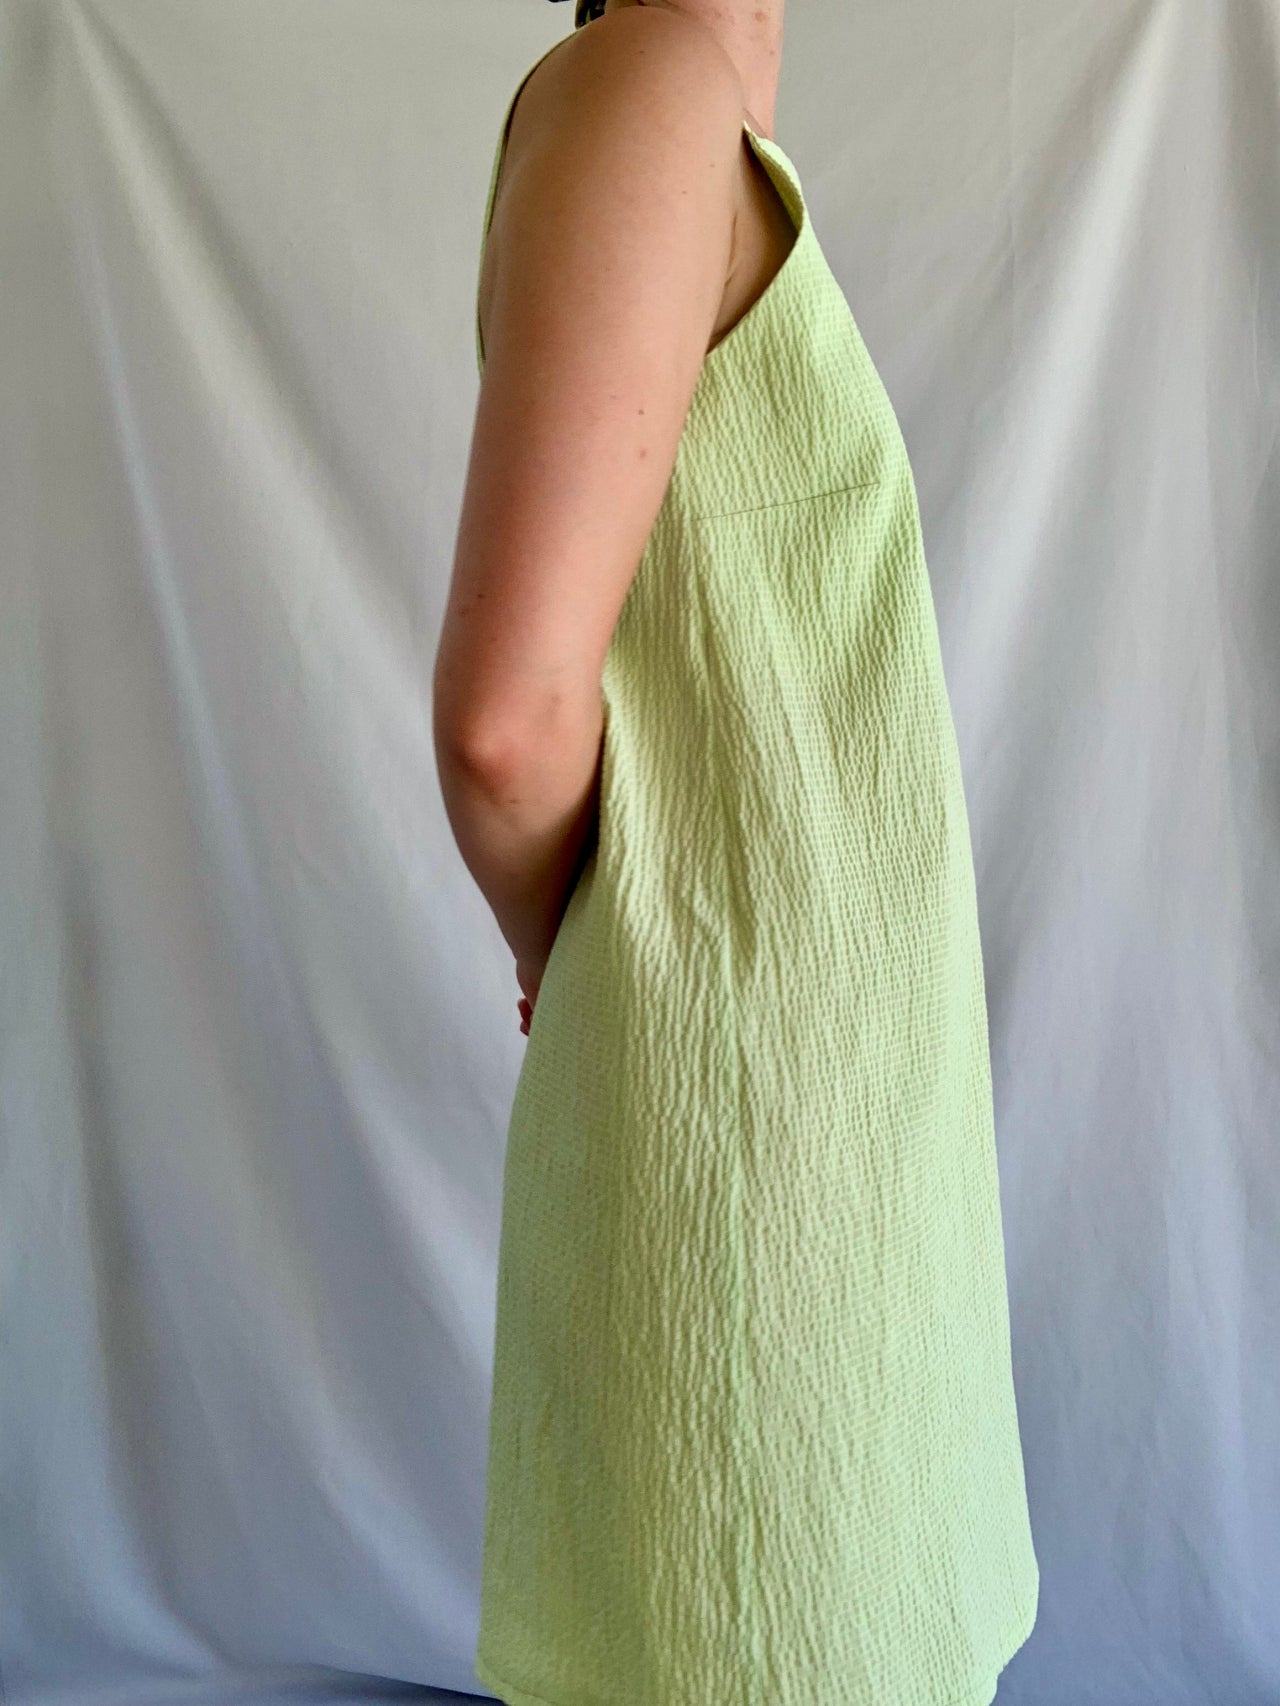 Summer Dress - Lime